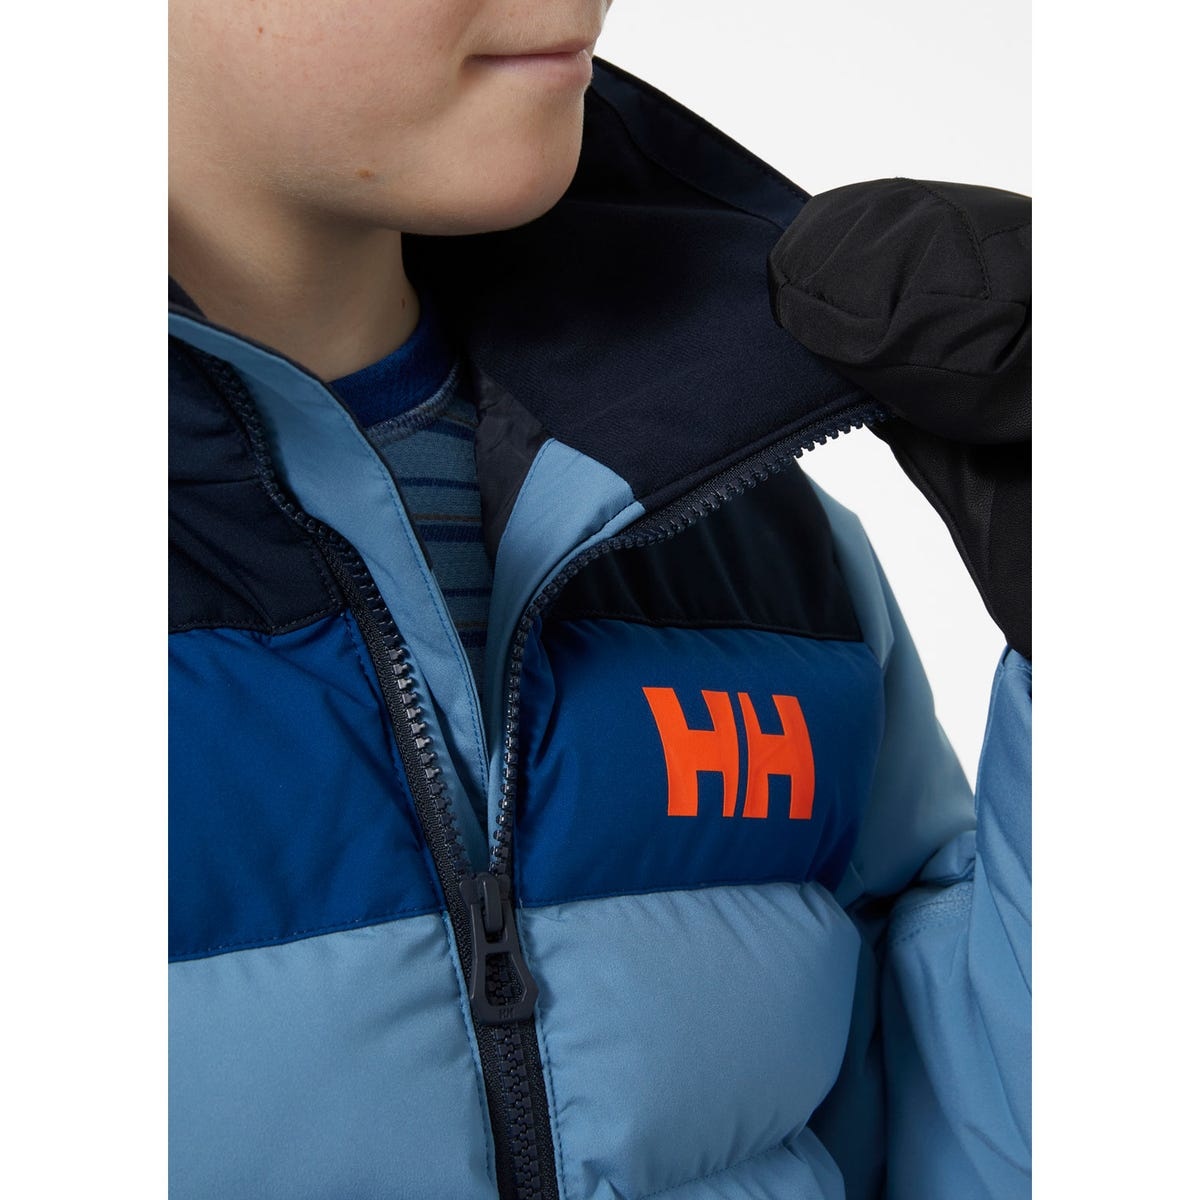 Helly-Hansen Junior Unisex Cyclone Jacket